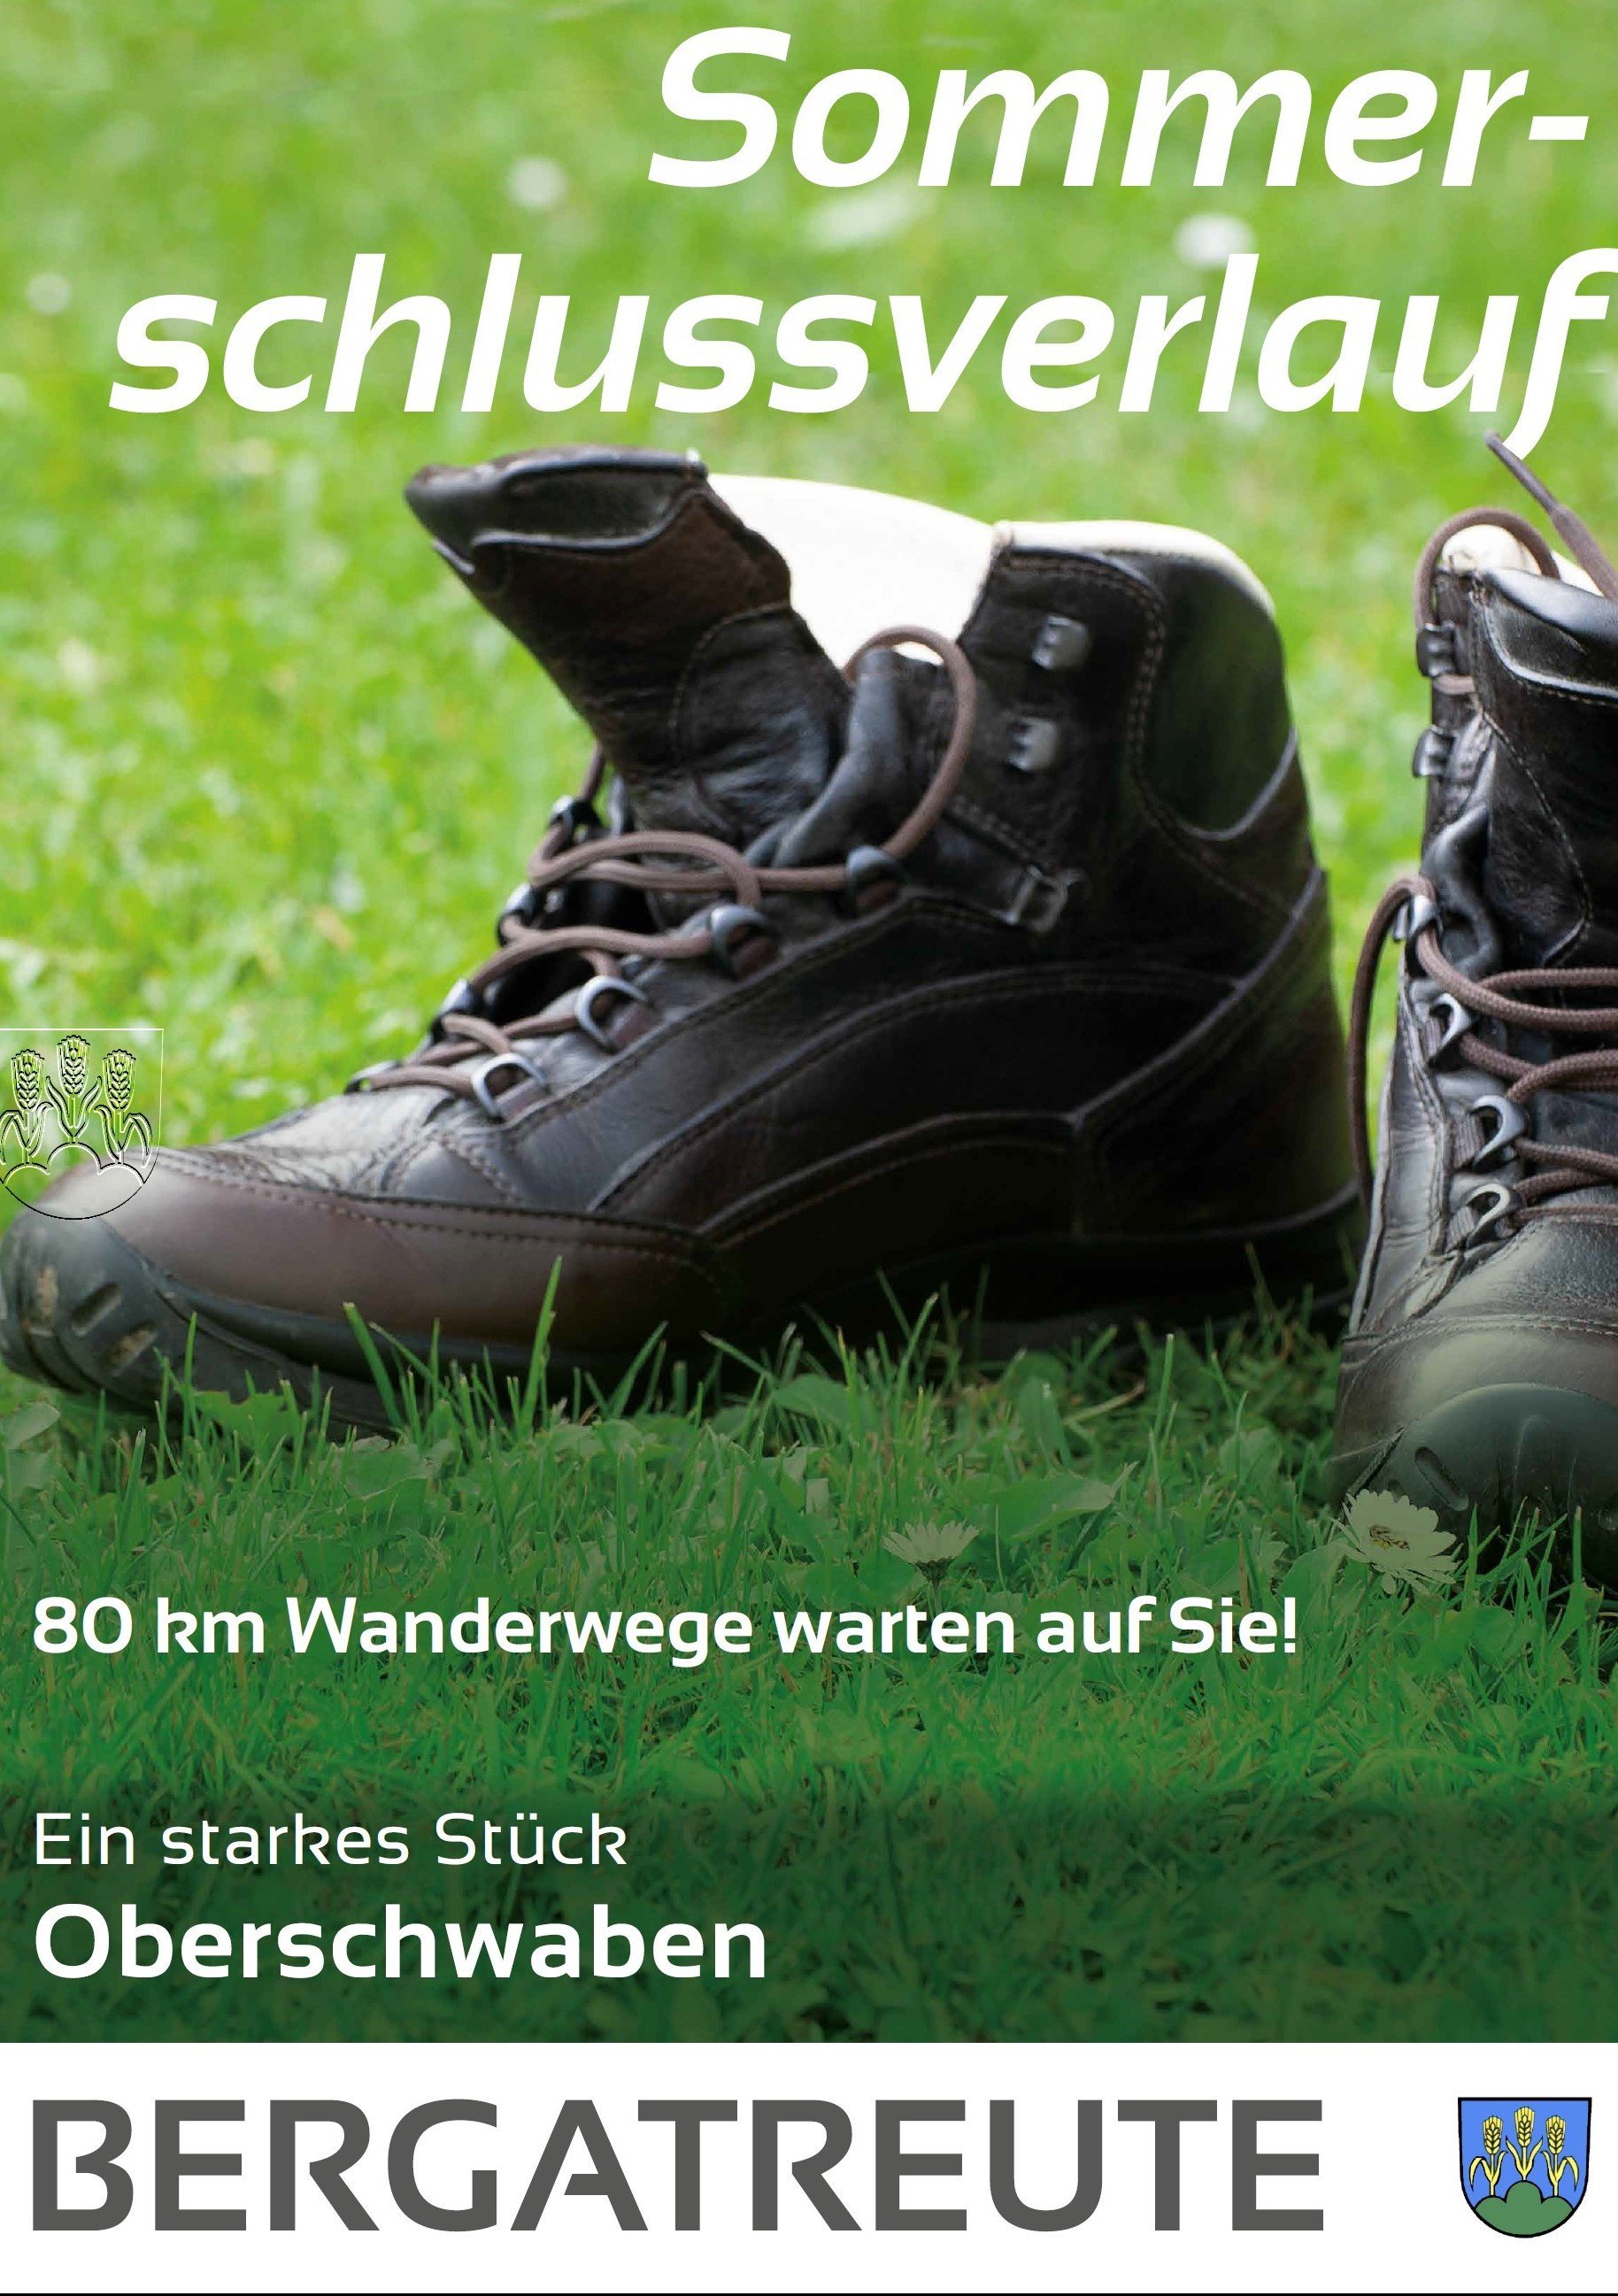  Plakat mit Wanderstiefel und Titel: Sommerschlussverlauf - 80km Wanderwege warten auf Sie 